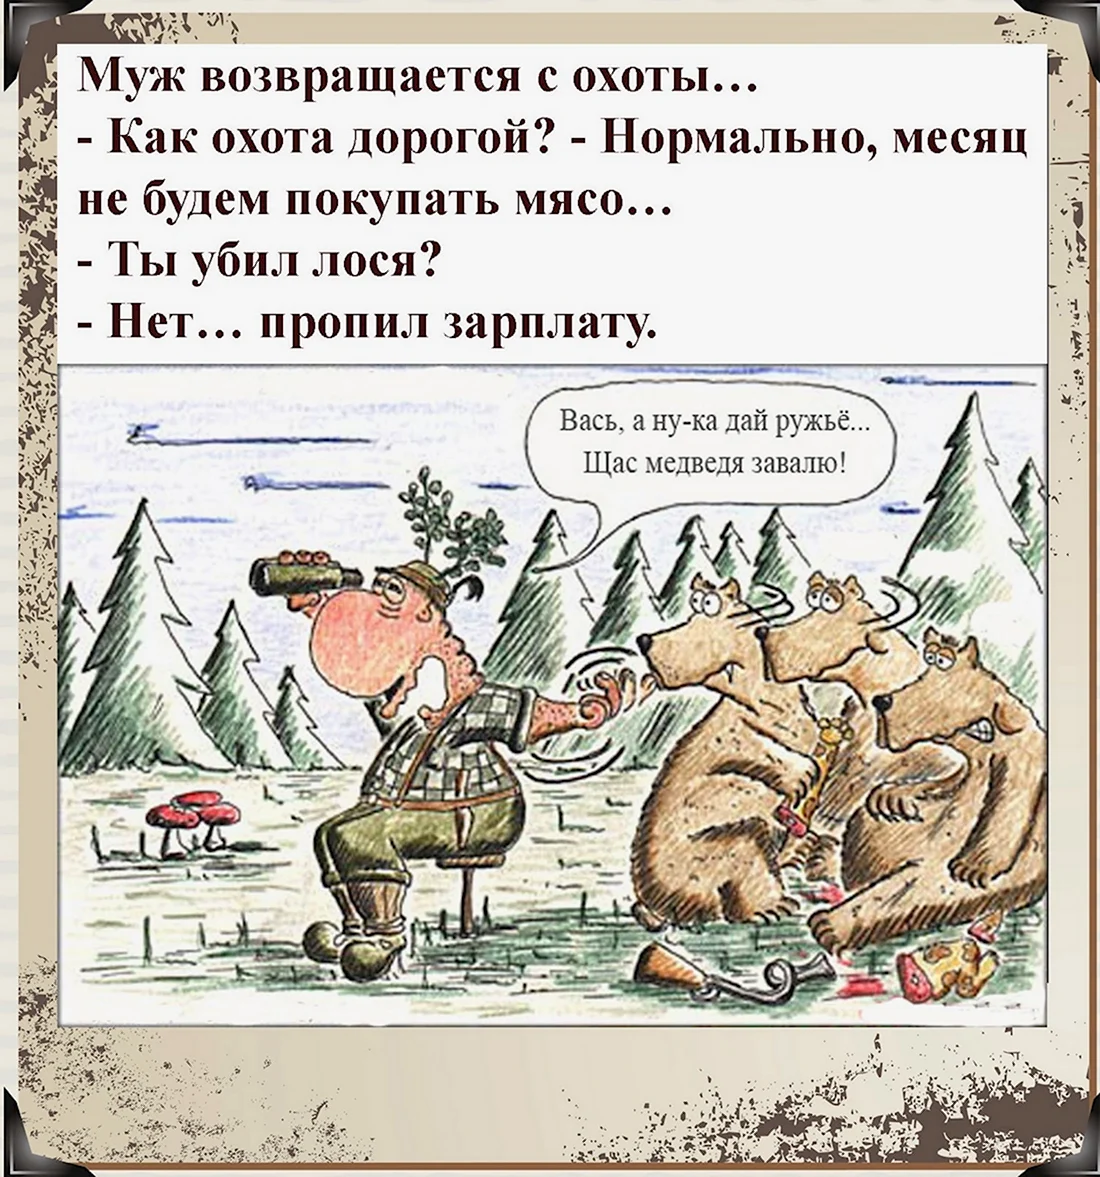 Анекдот про медведя и охотника. Анекдот в картинке